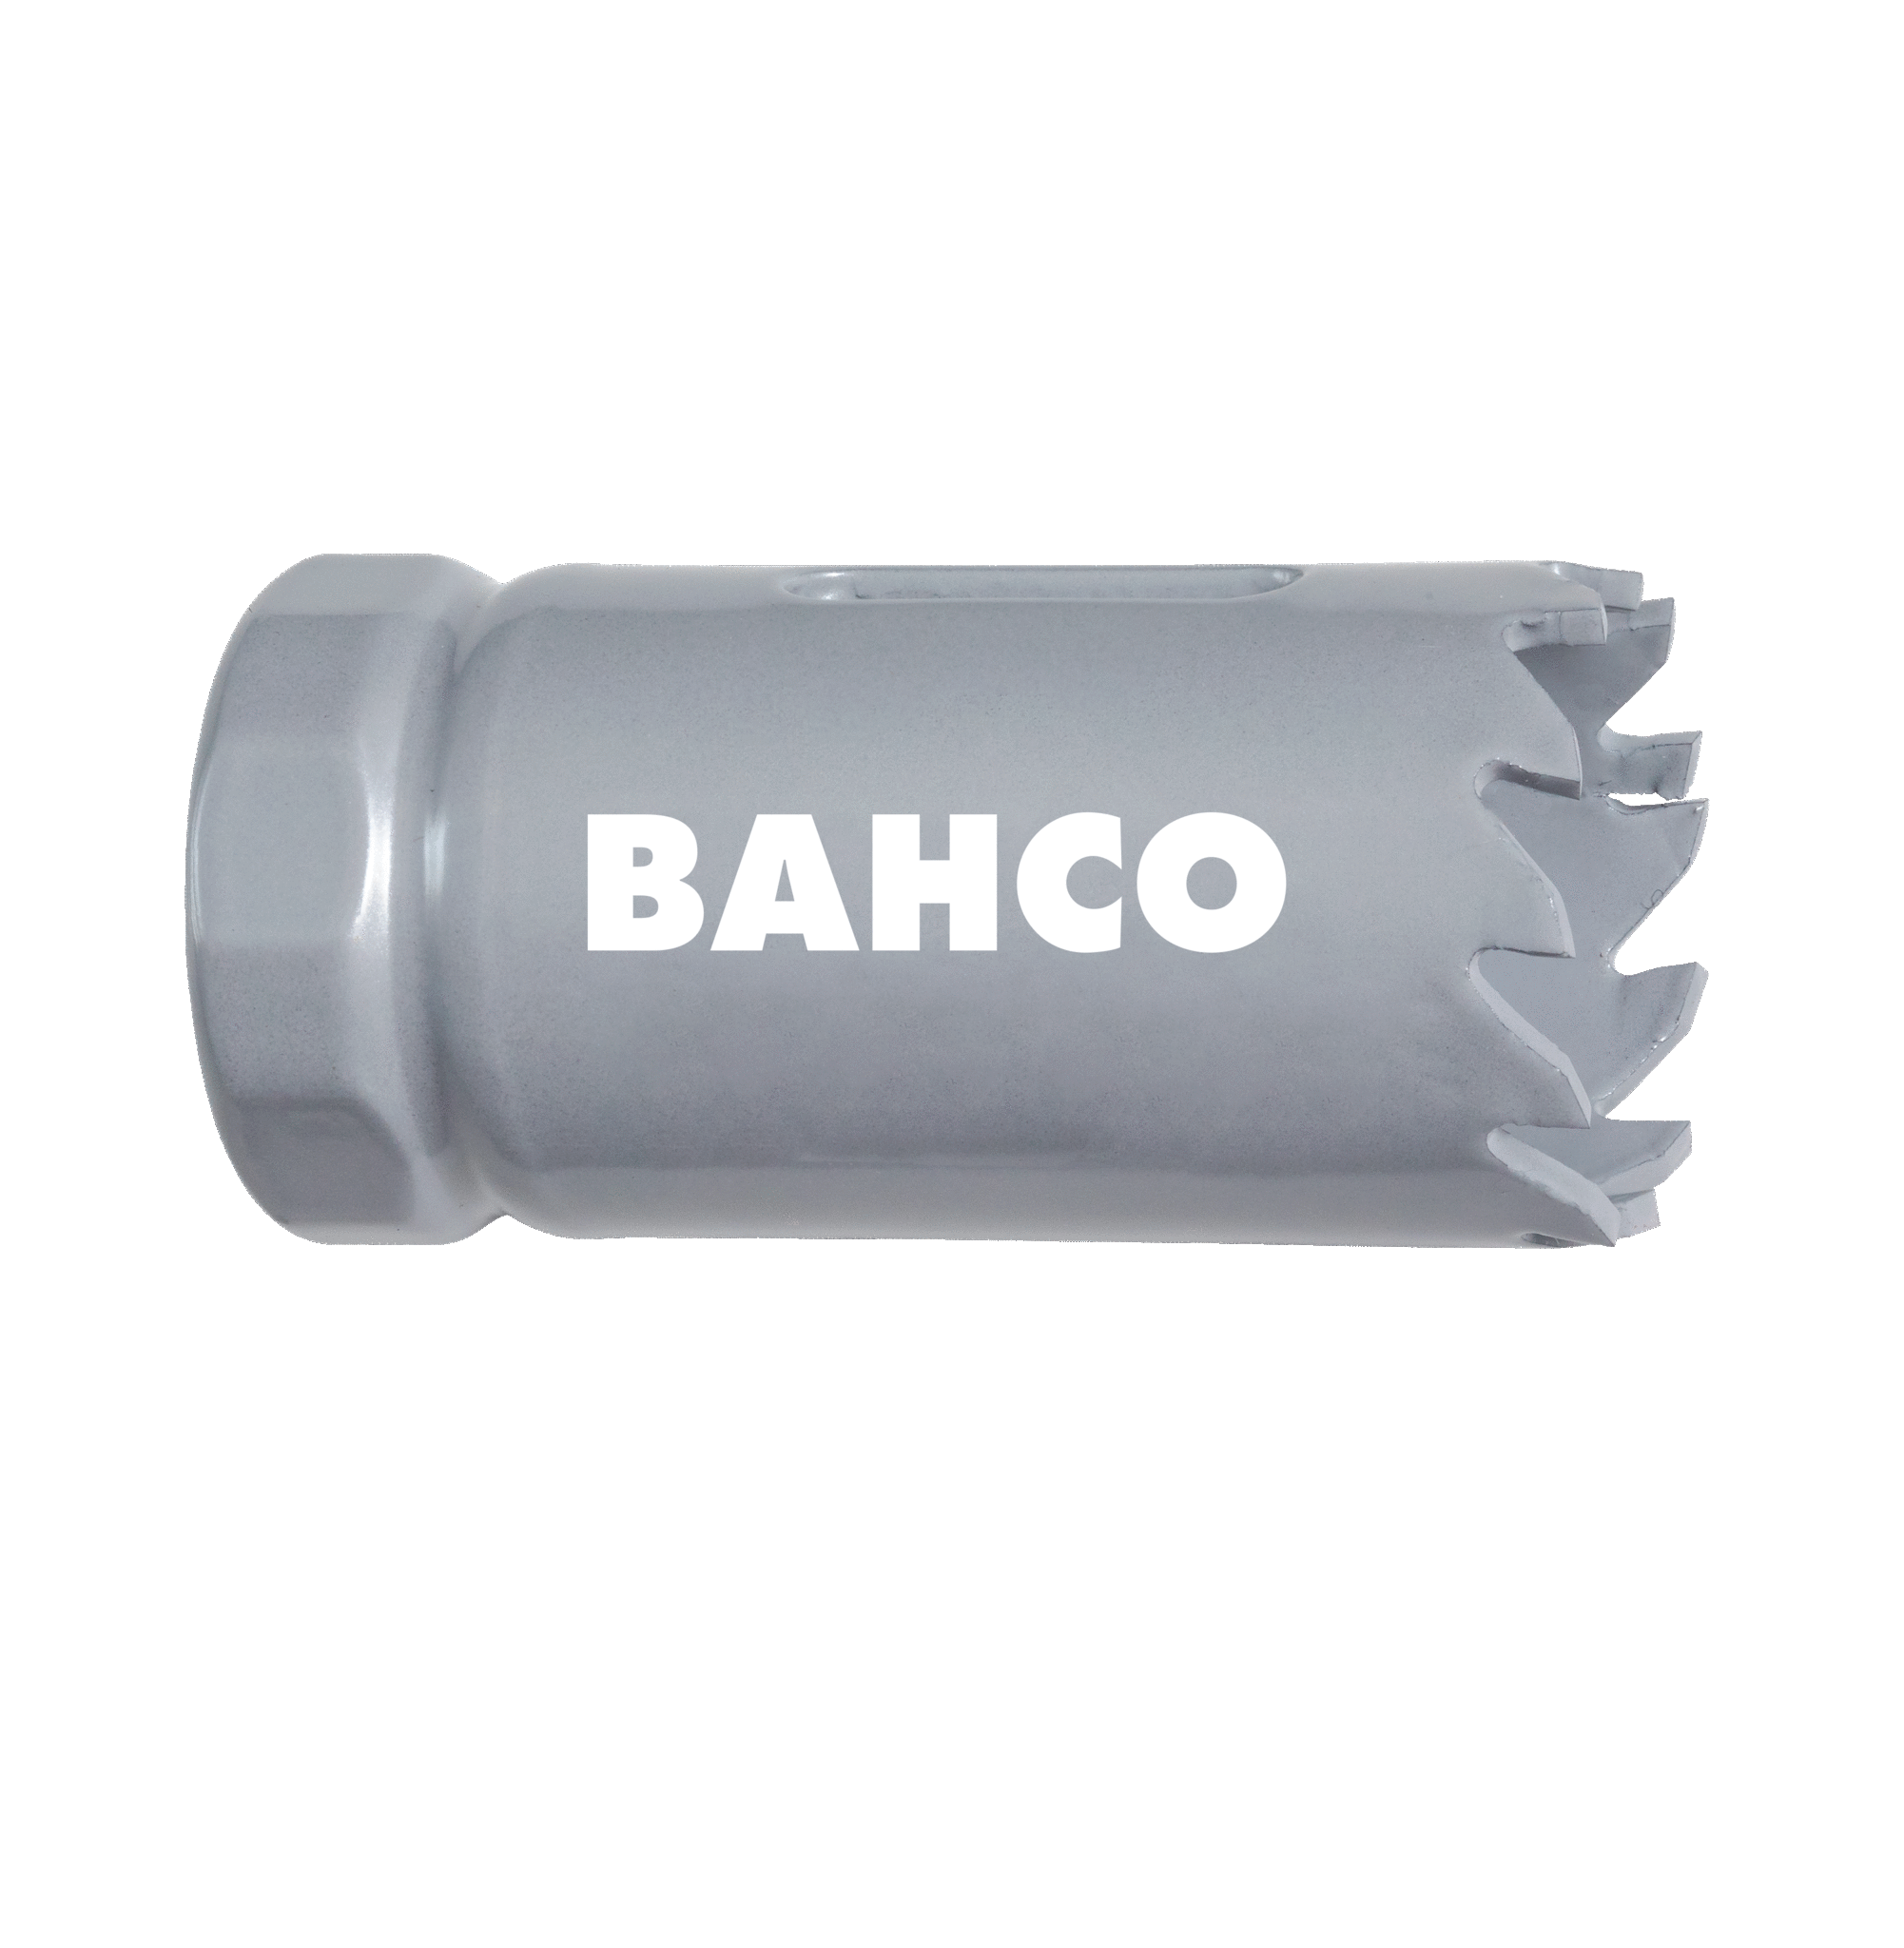 Кольцевые пилы с твердосплавными напайками BAHCO 3832-56